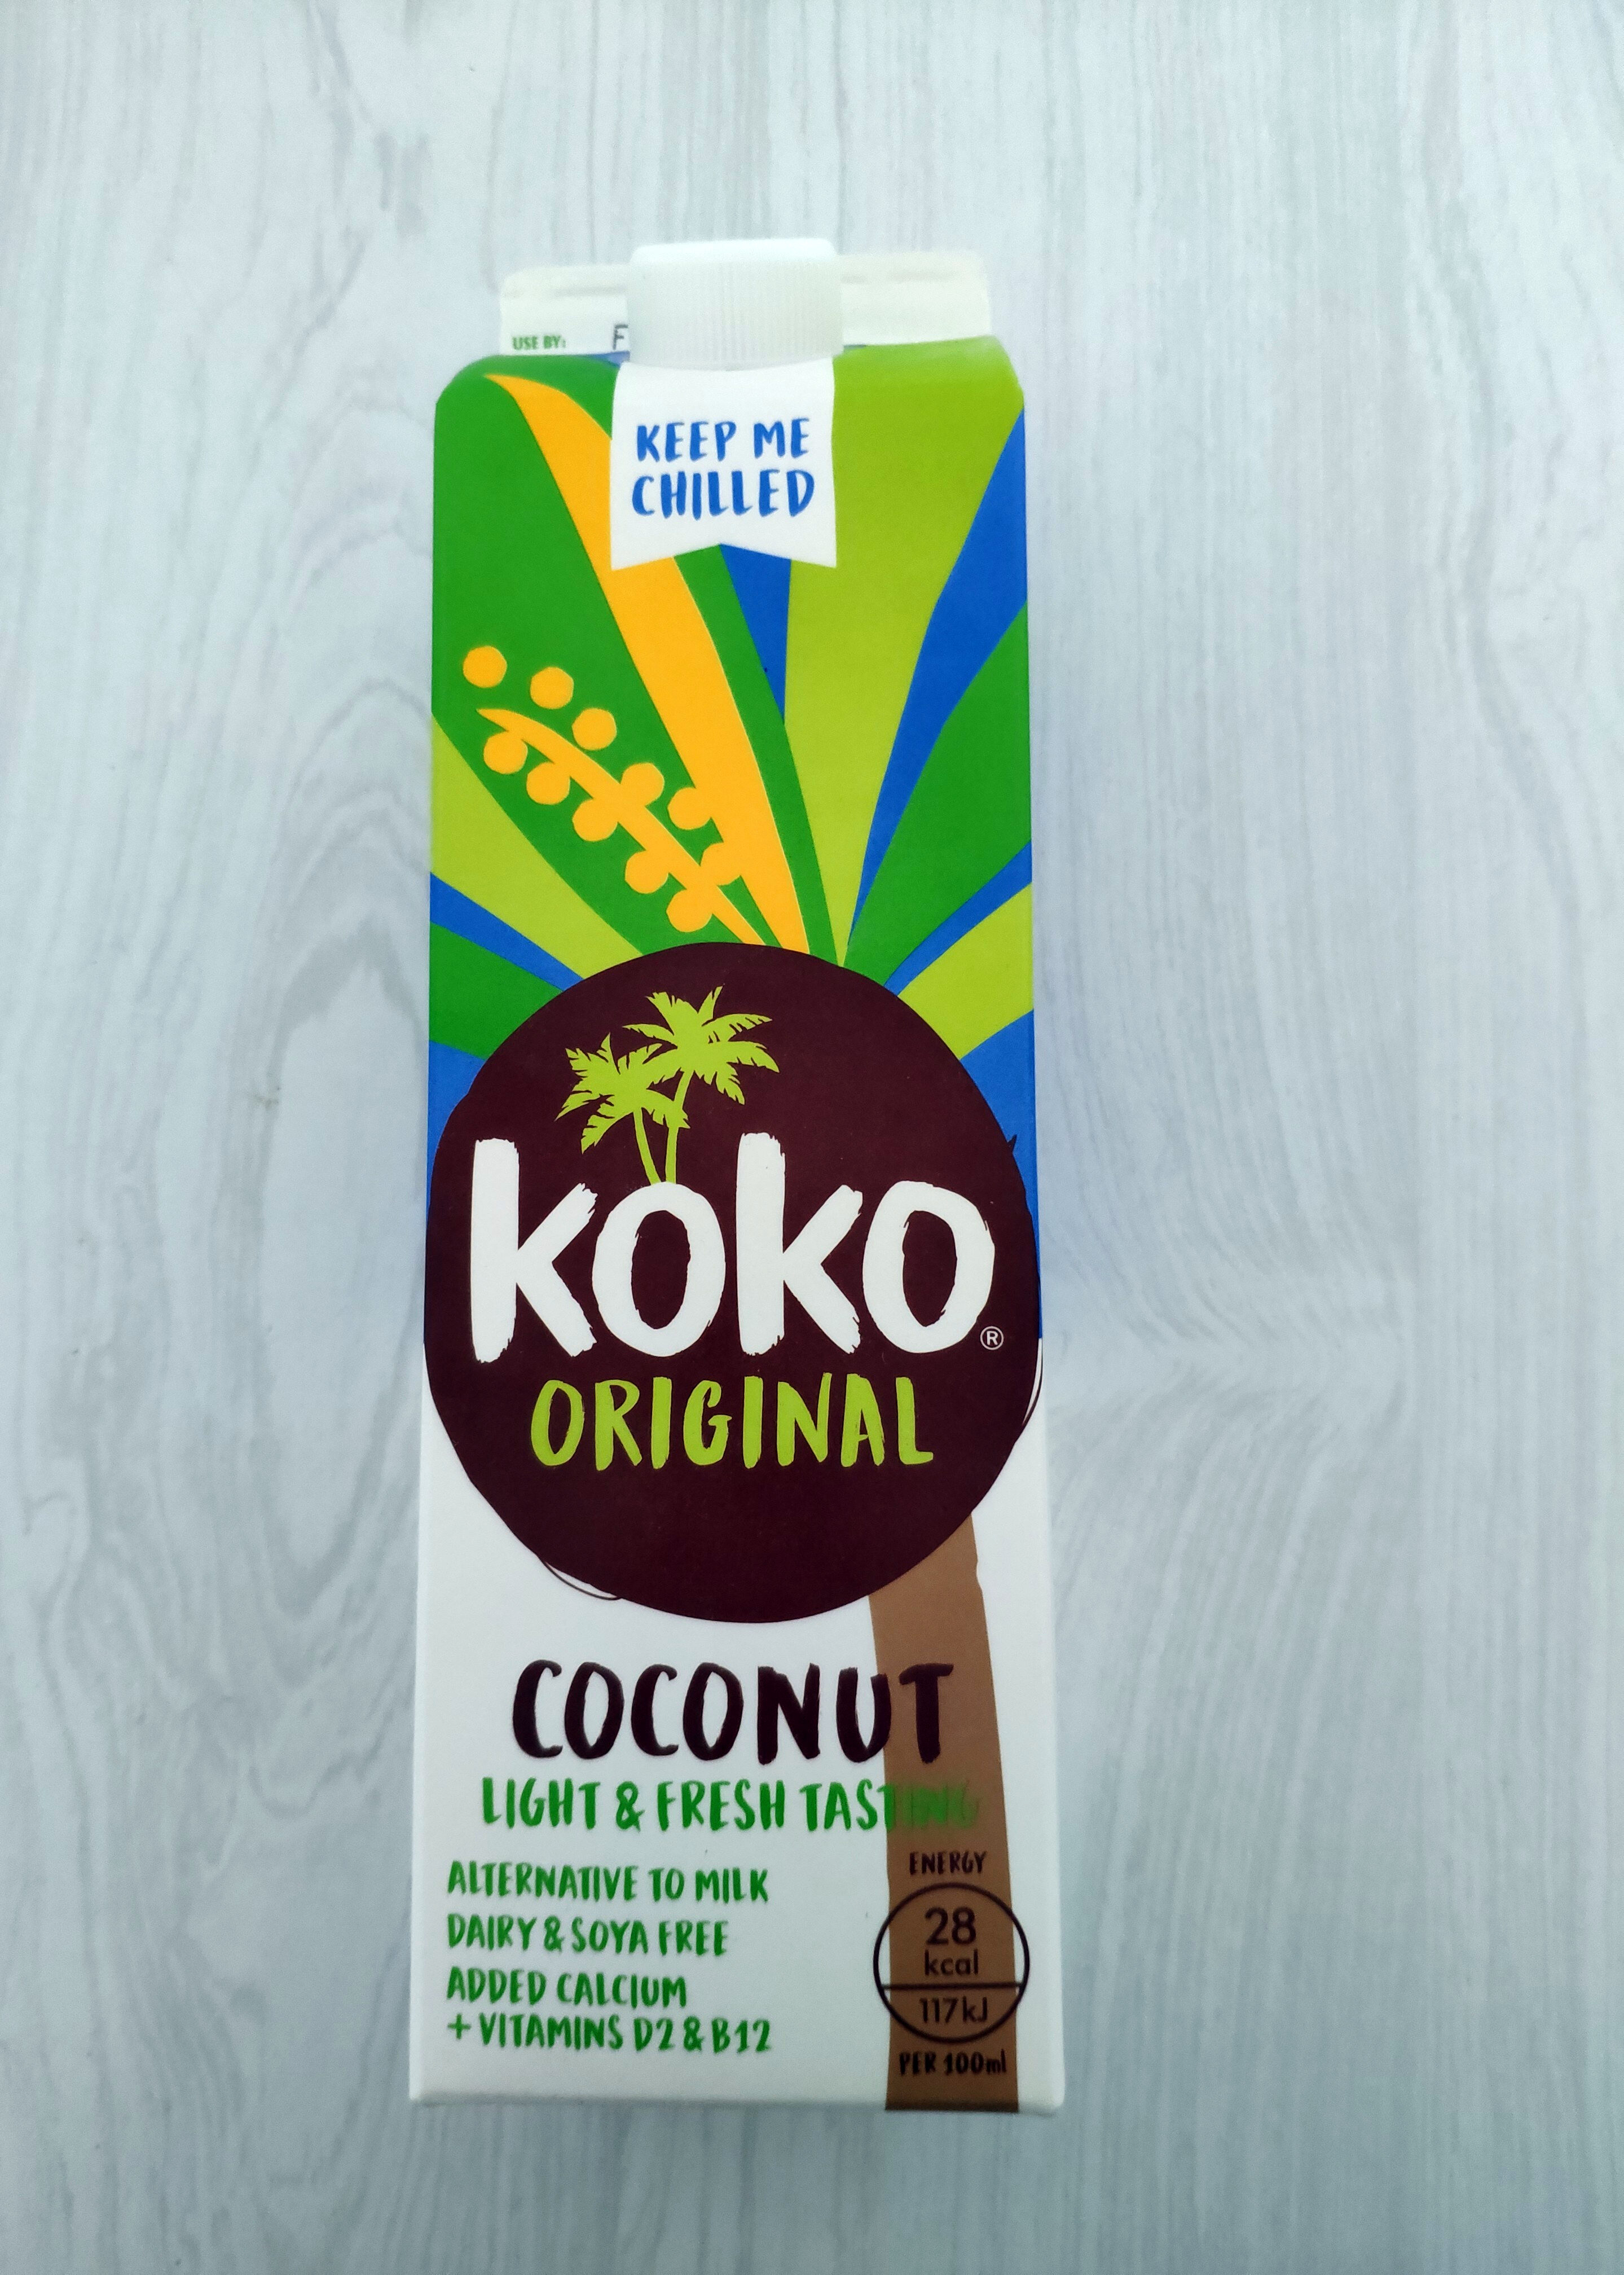 Original Coconut - Product